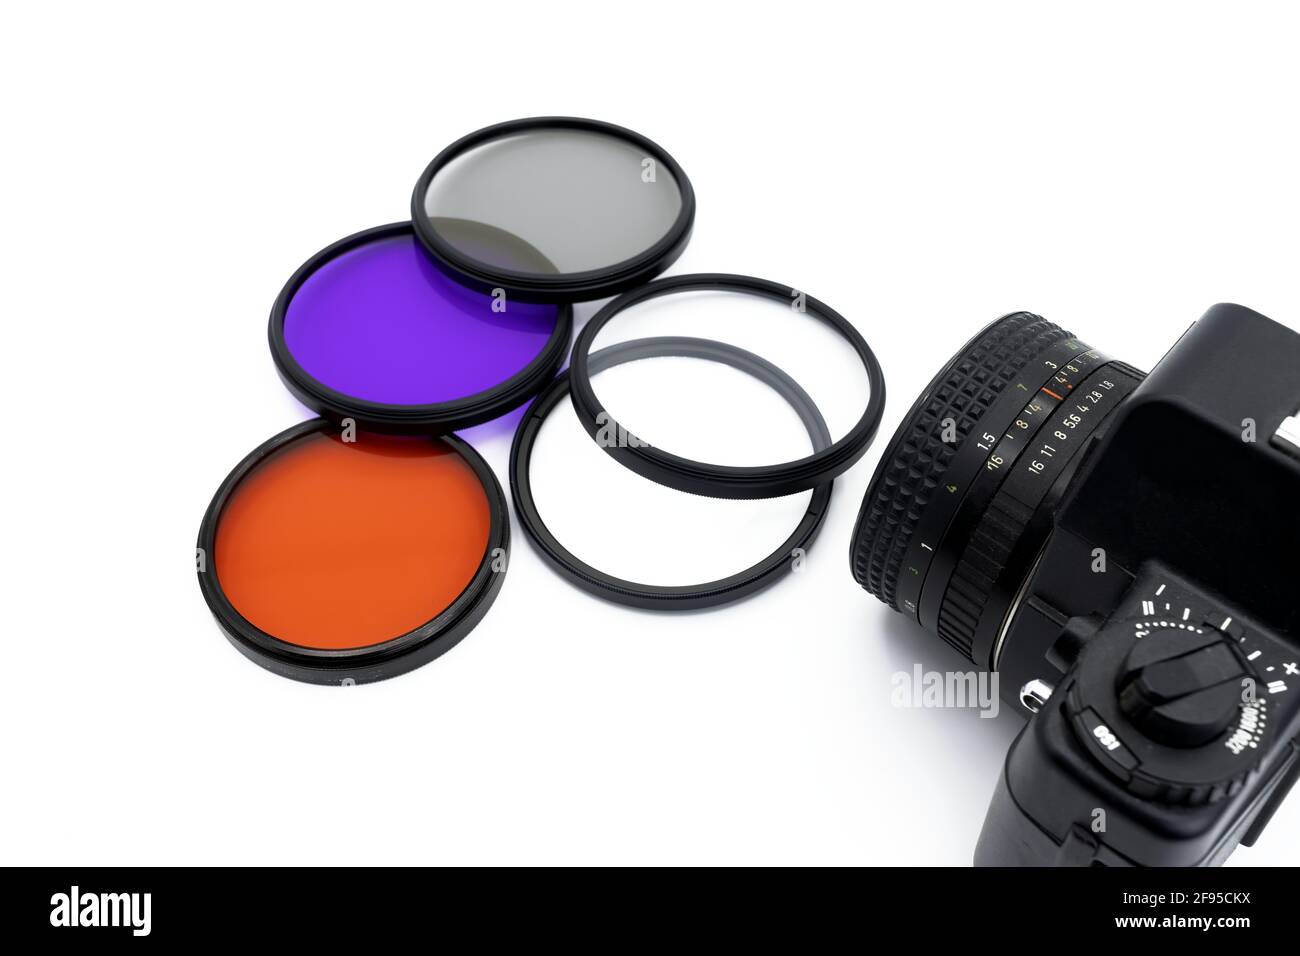 Filtres photographiques de différentes couleurs sur fond blanc avec un appareil photo, concept de photographie Banque D'Images